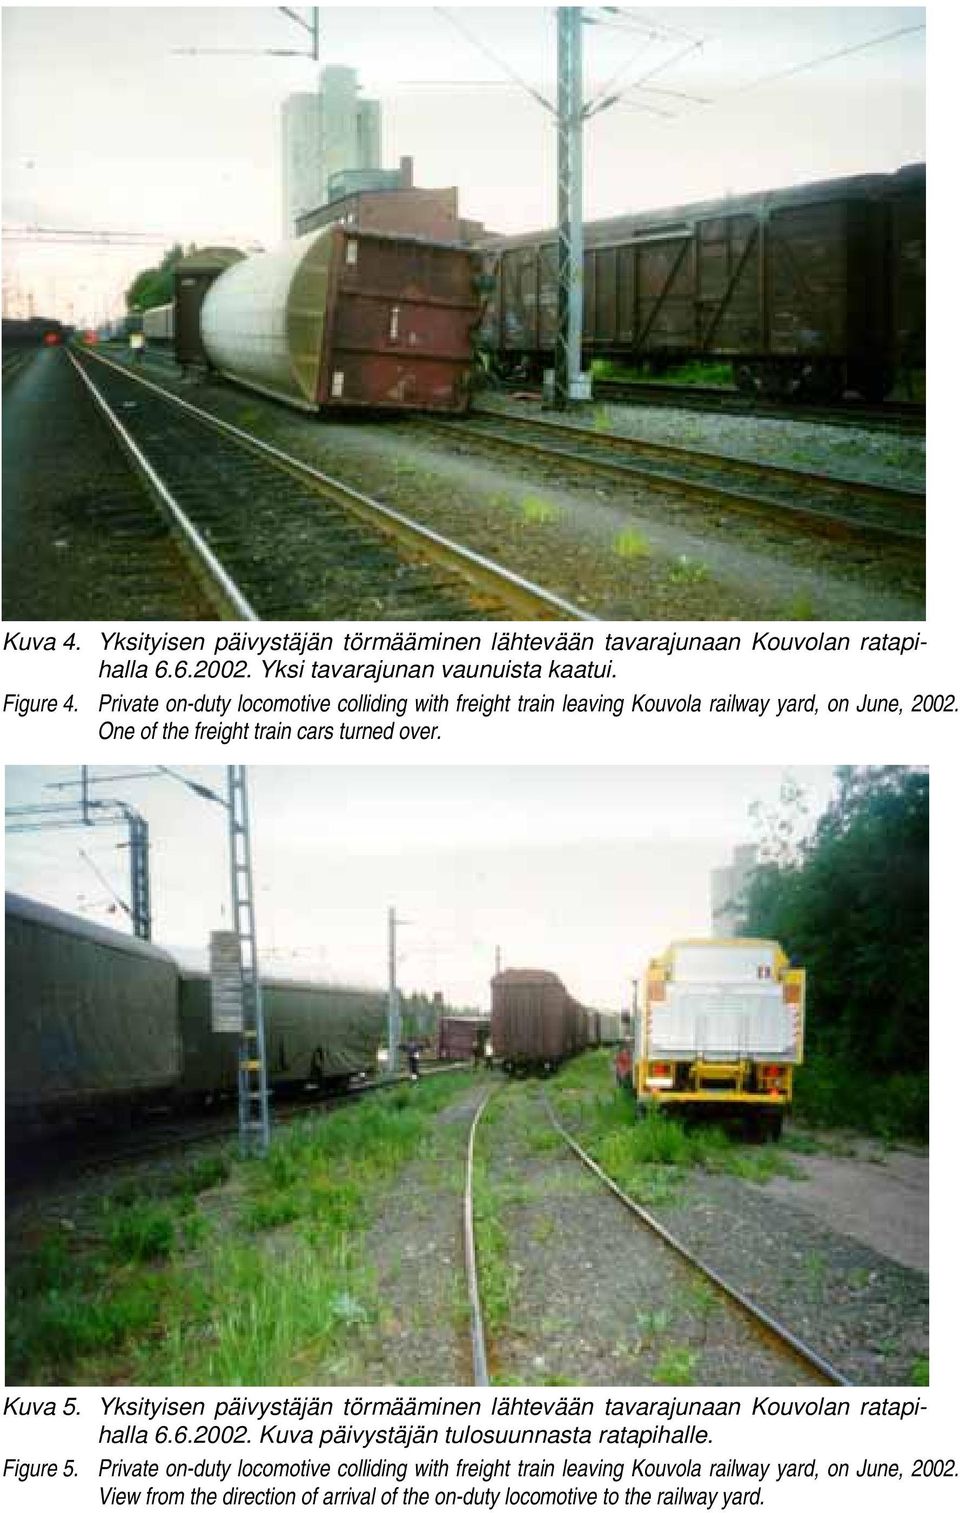 Yksityisen päivystäjän törmääminen lähtevään tavarajunaan Kouvolan ratapihalla 6.6.2002. Kuva päivystäjän tulosuunnasta ratapihalle. Figure 5.